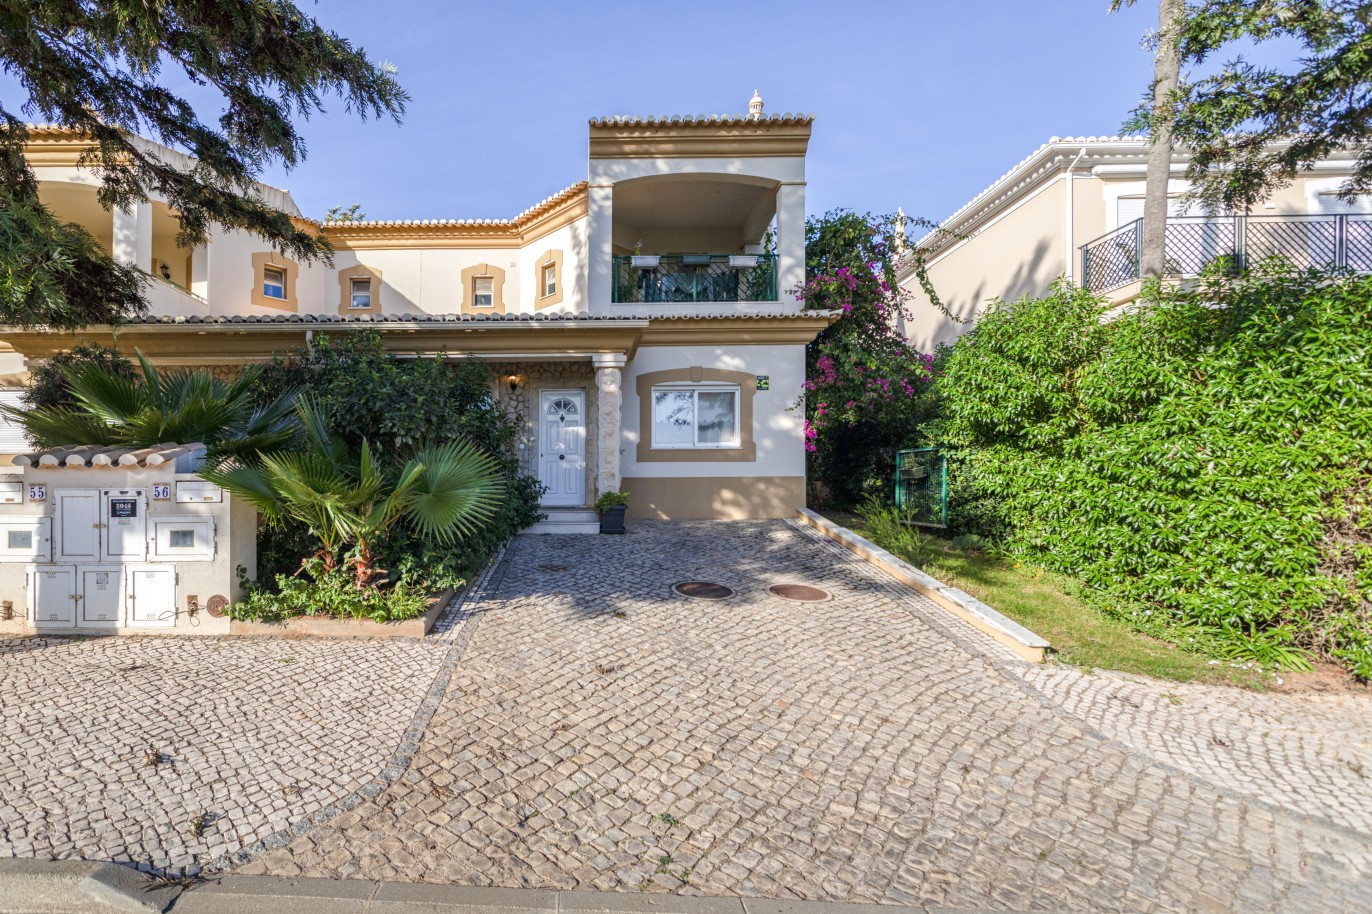 Villa mit 3 Schlafzimmern, in privater Wohnanlage, zu verkaufen in Lagos, Algarve_246290